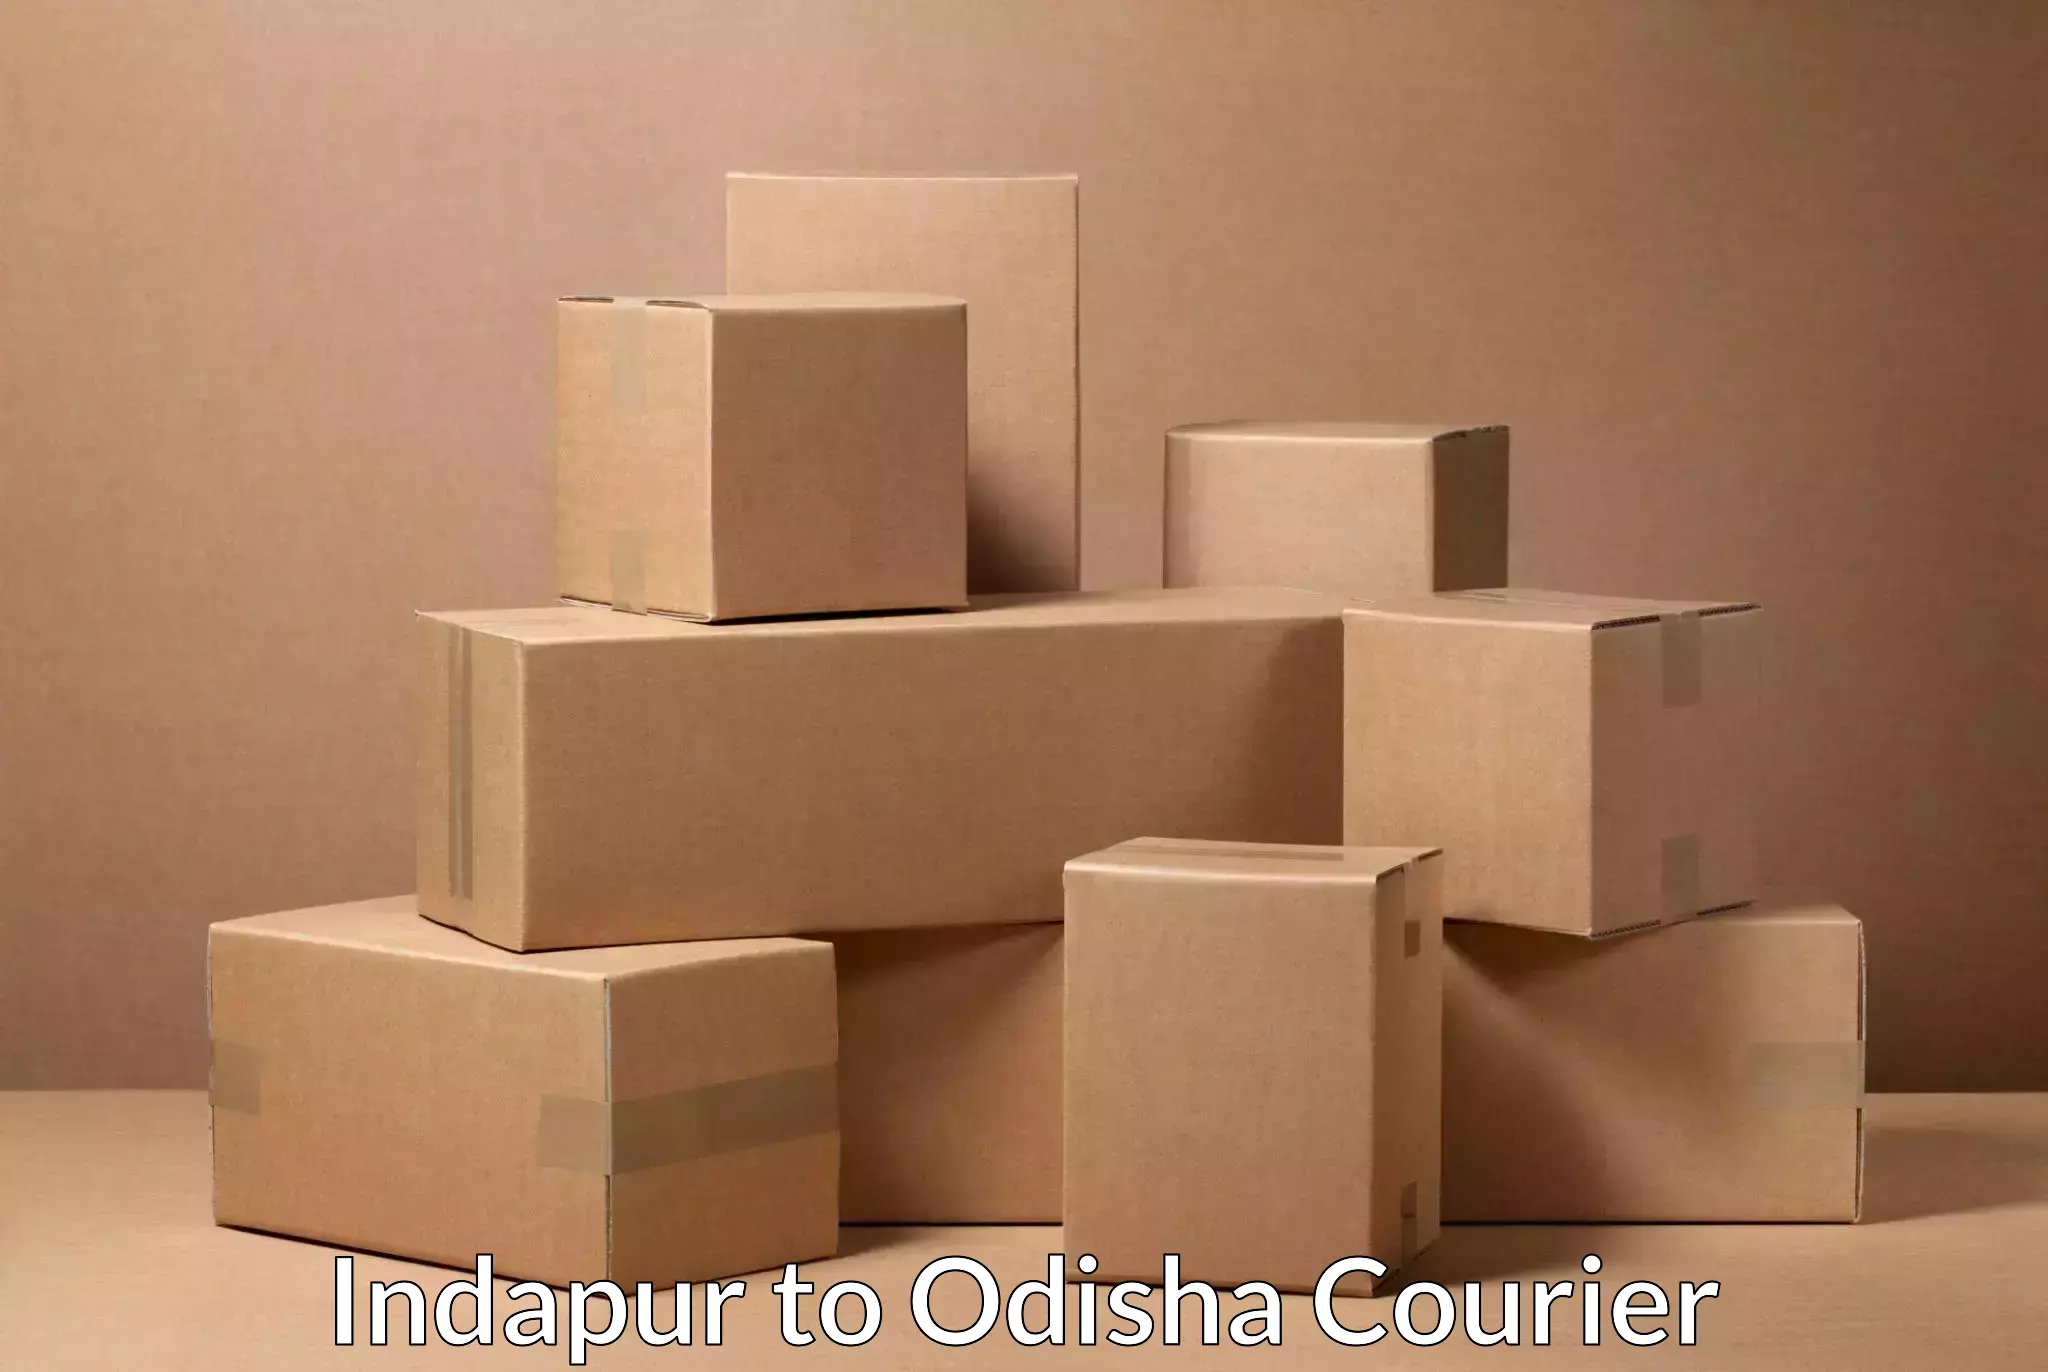 Nationwide shipping coverage Indapur to Kesinga